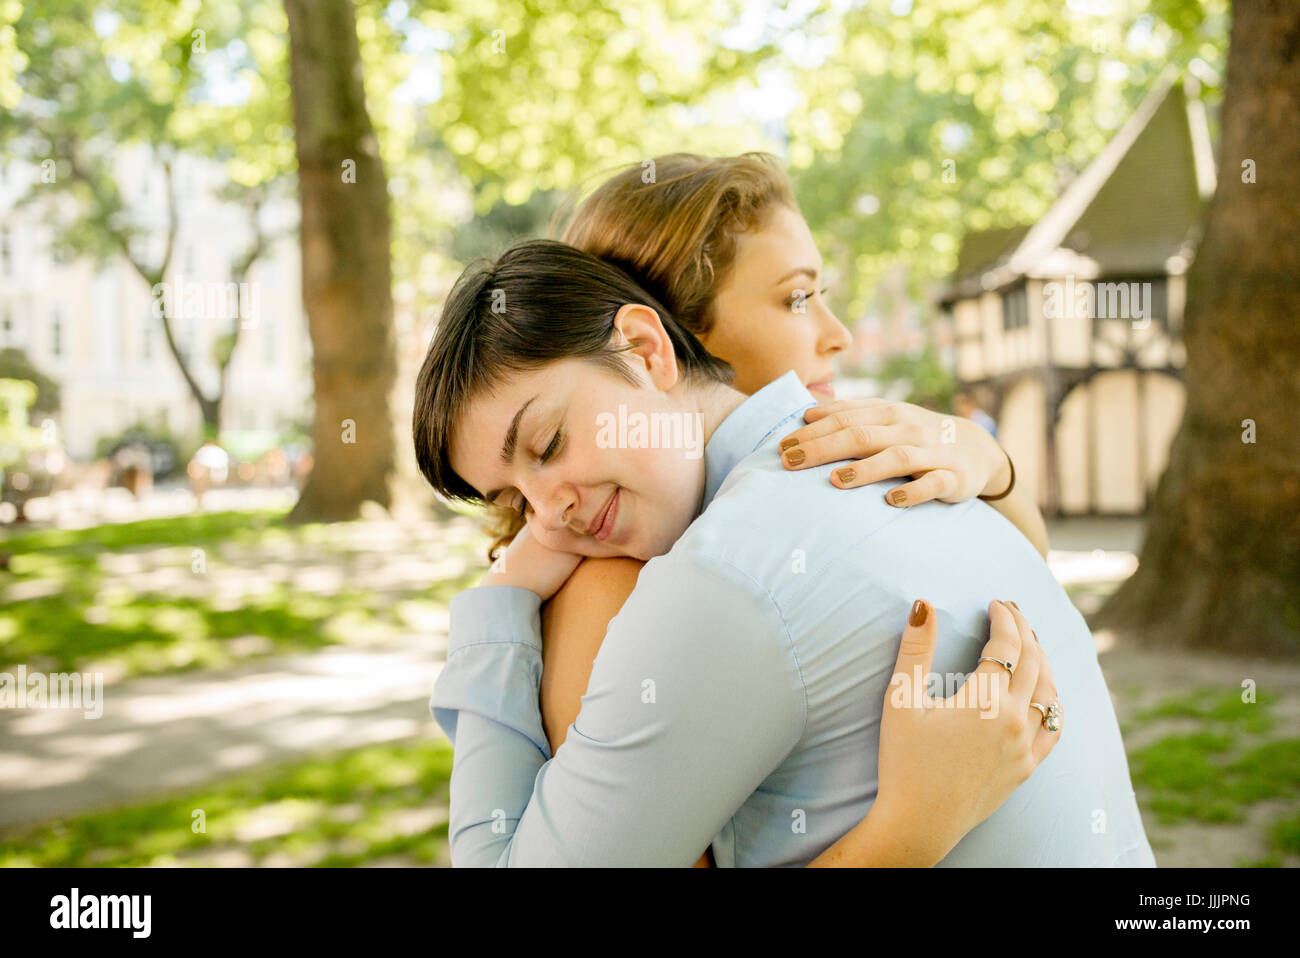 Una giovane coppia lesbica abbracciarsi nel parco. Foto Stock